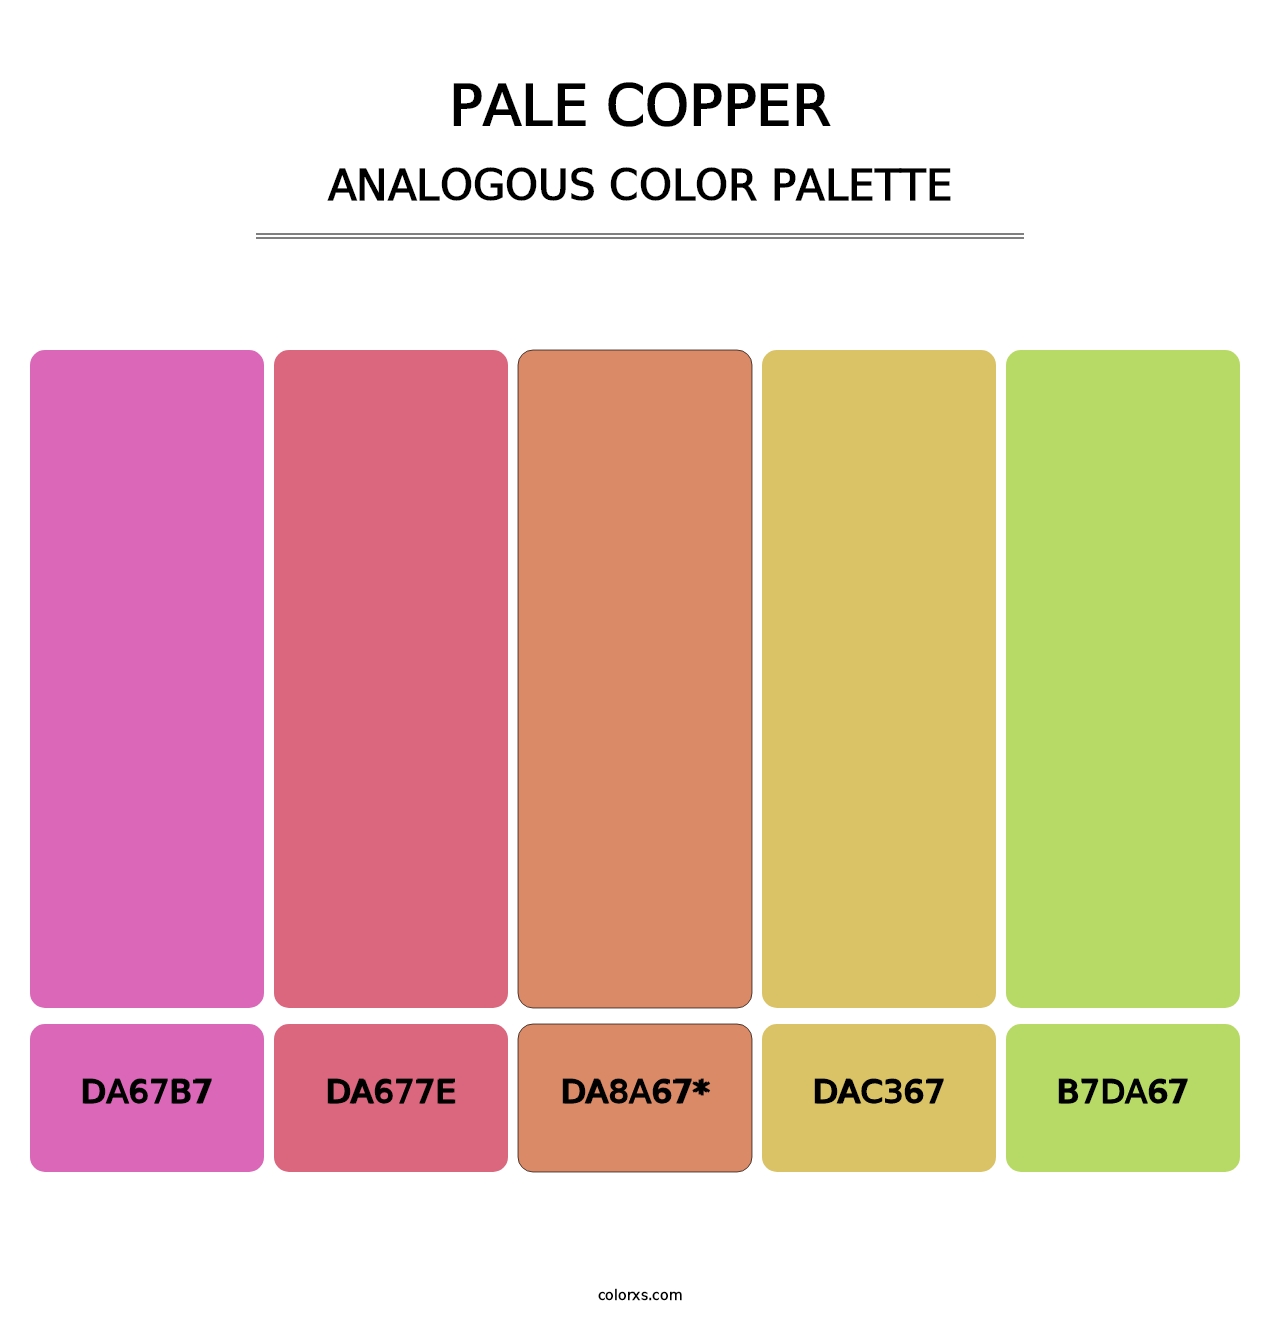 Pale Copper - Analogous Color Palette